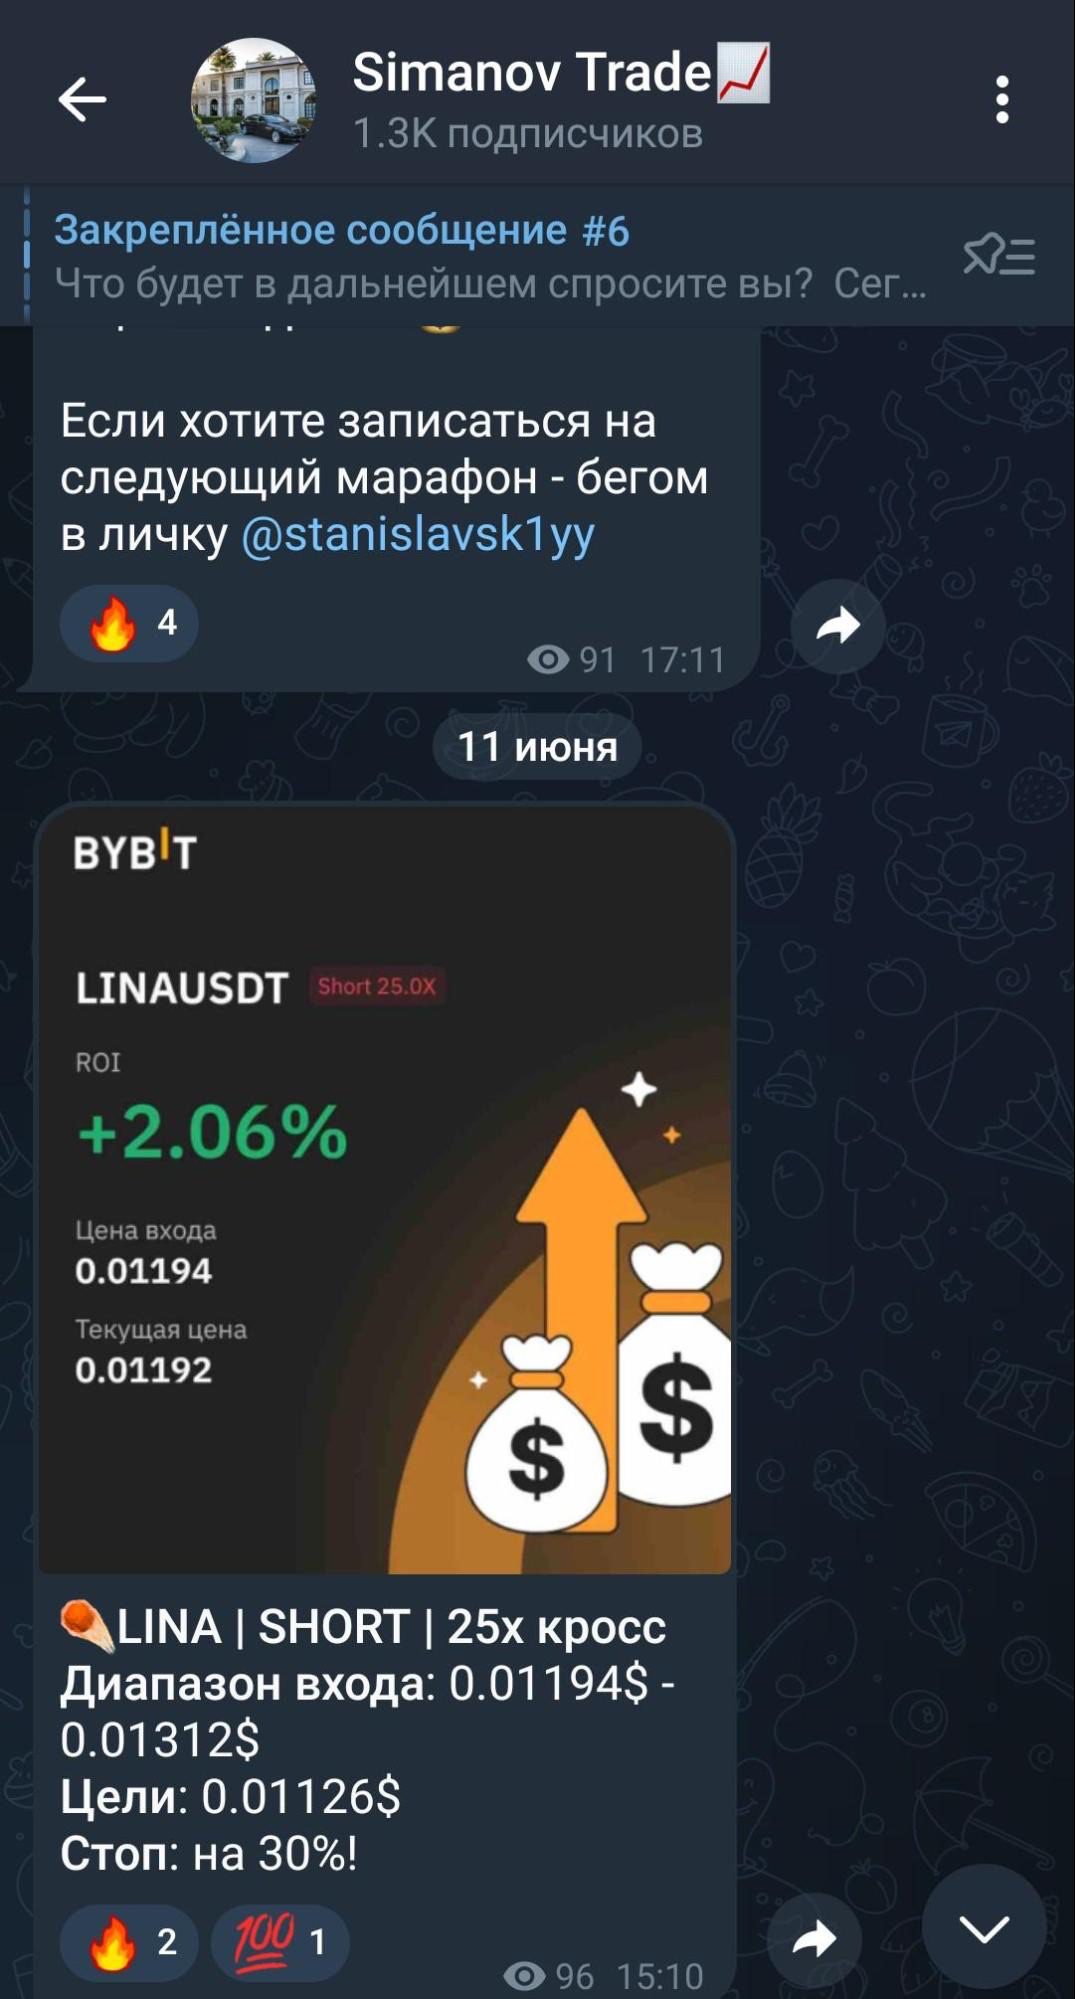 Пост в телеграм-канале Simanov trade